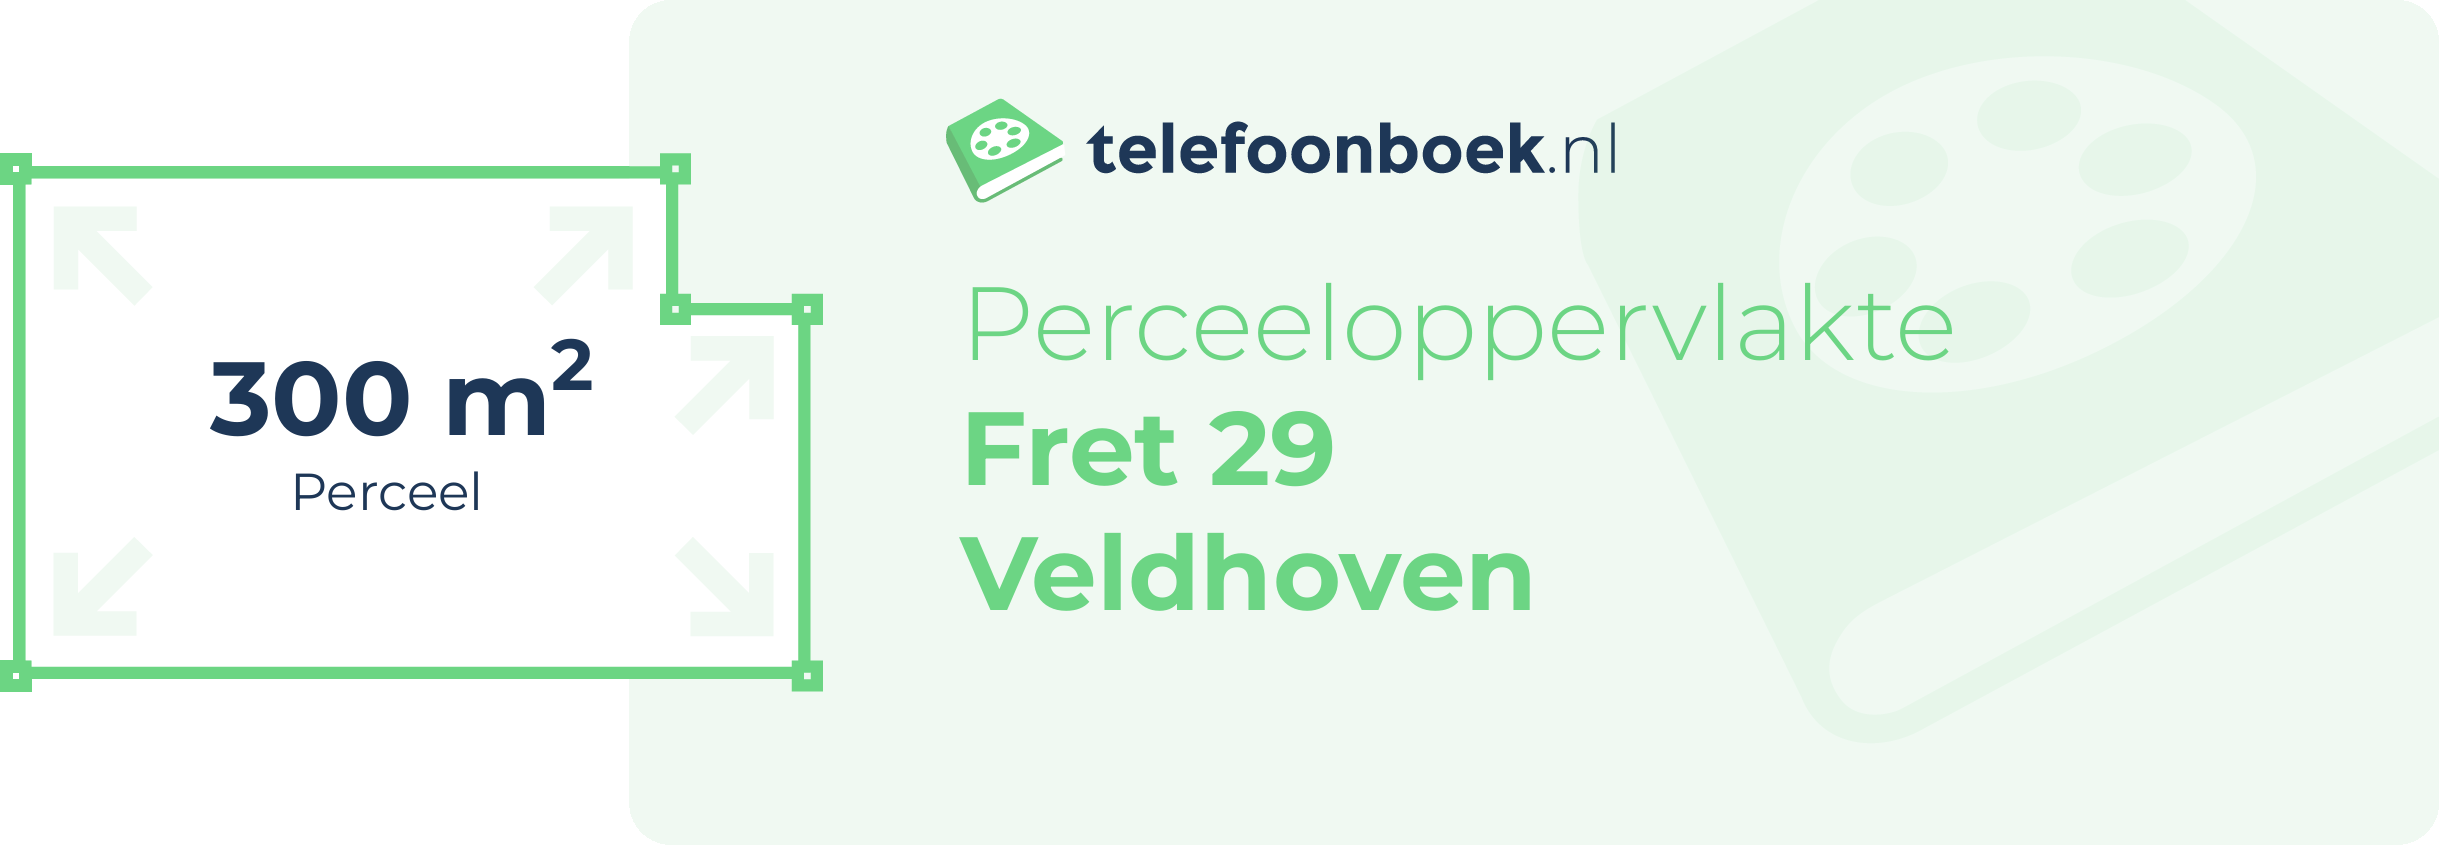 Perceeloppervlakte Fret 29 Veldhoven